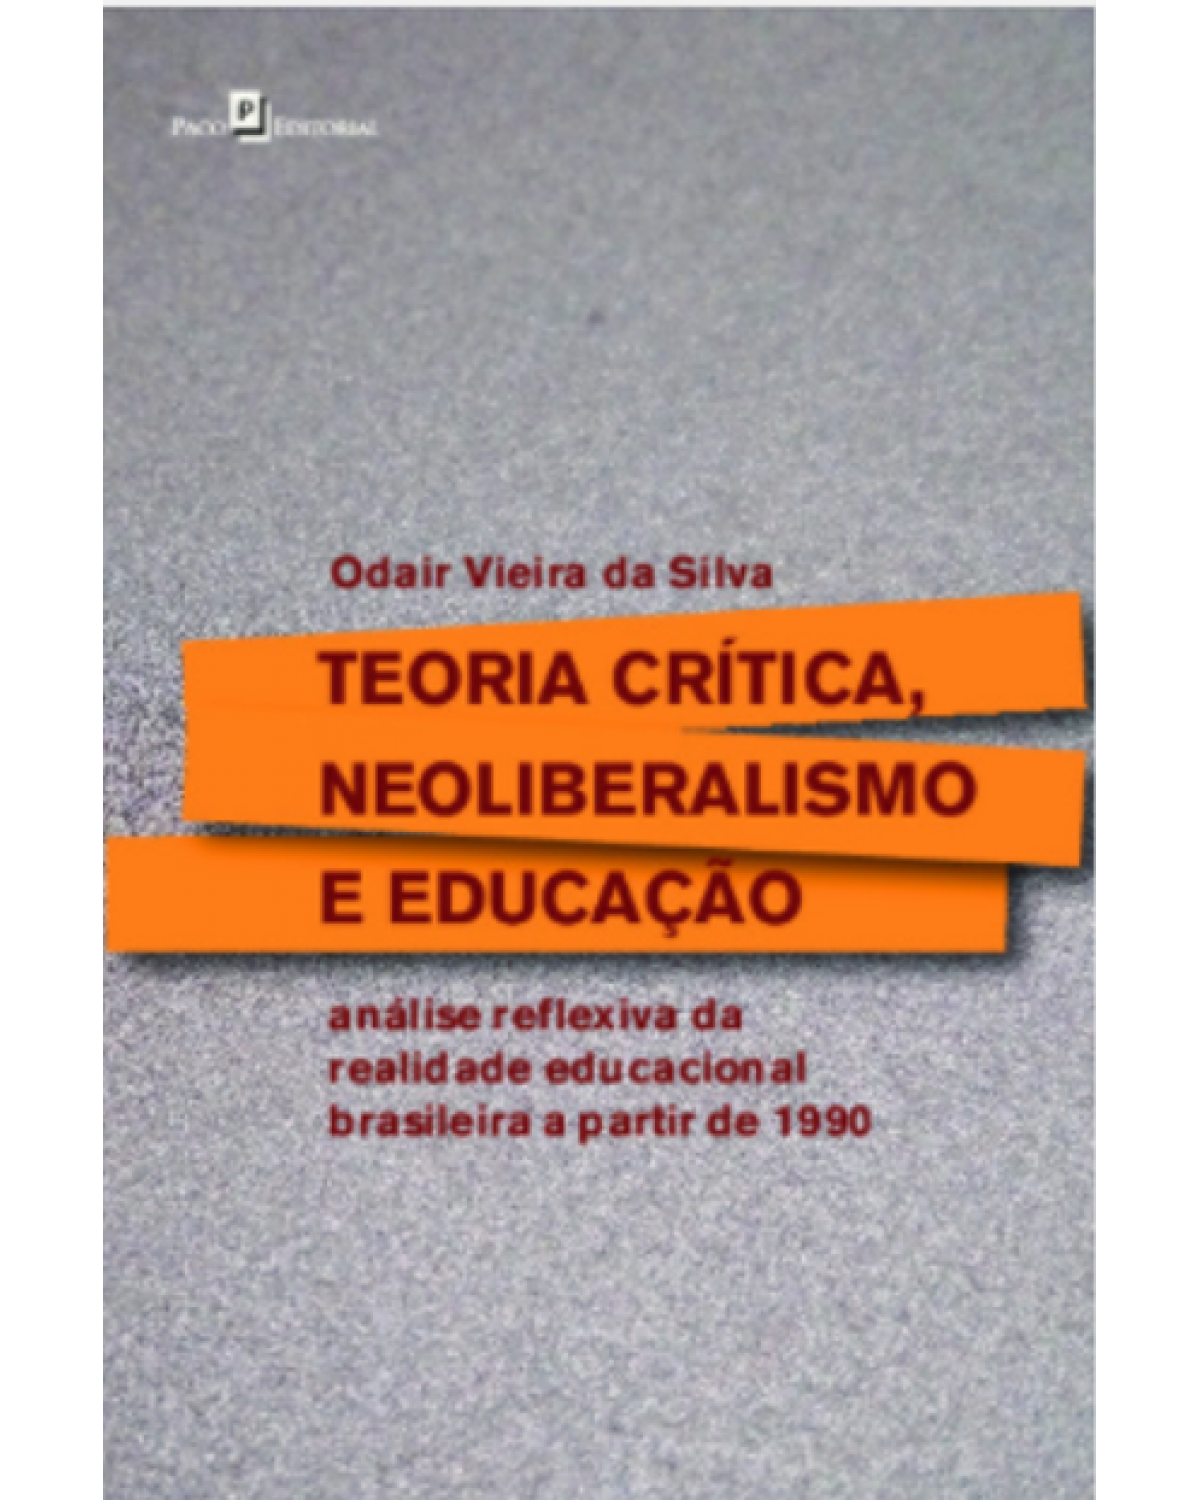 Teoria crítica, neoliberalismo e educação - análise reflexiva da realidade educacional brasileira a partir de 1990 - 1ª Edição | 2020